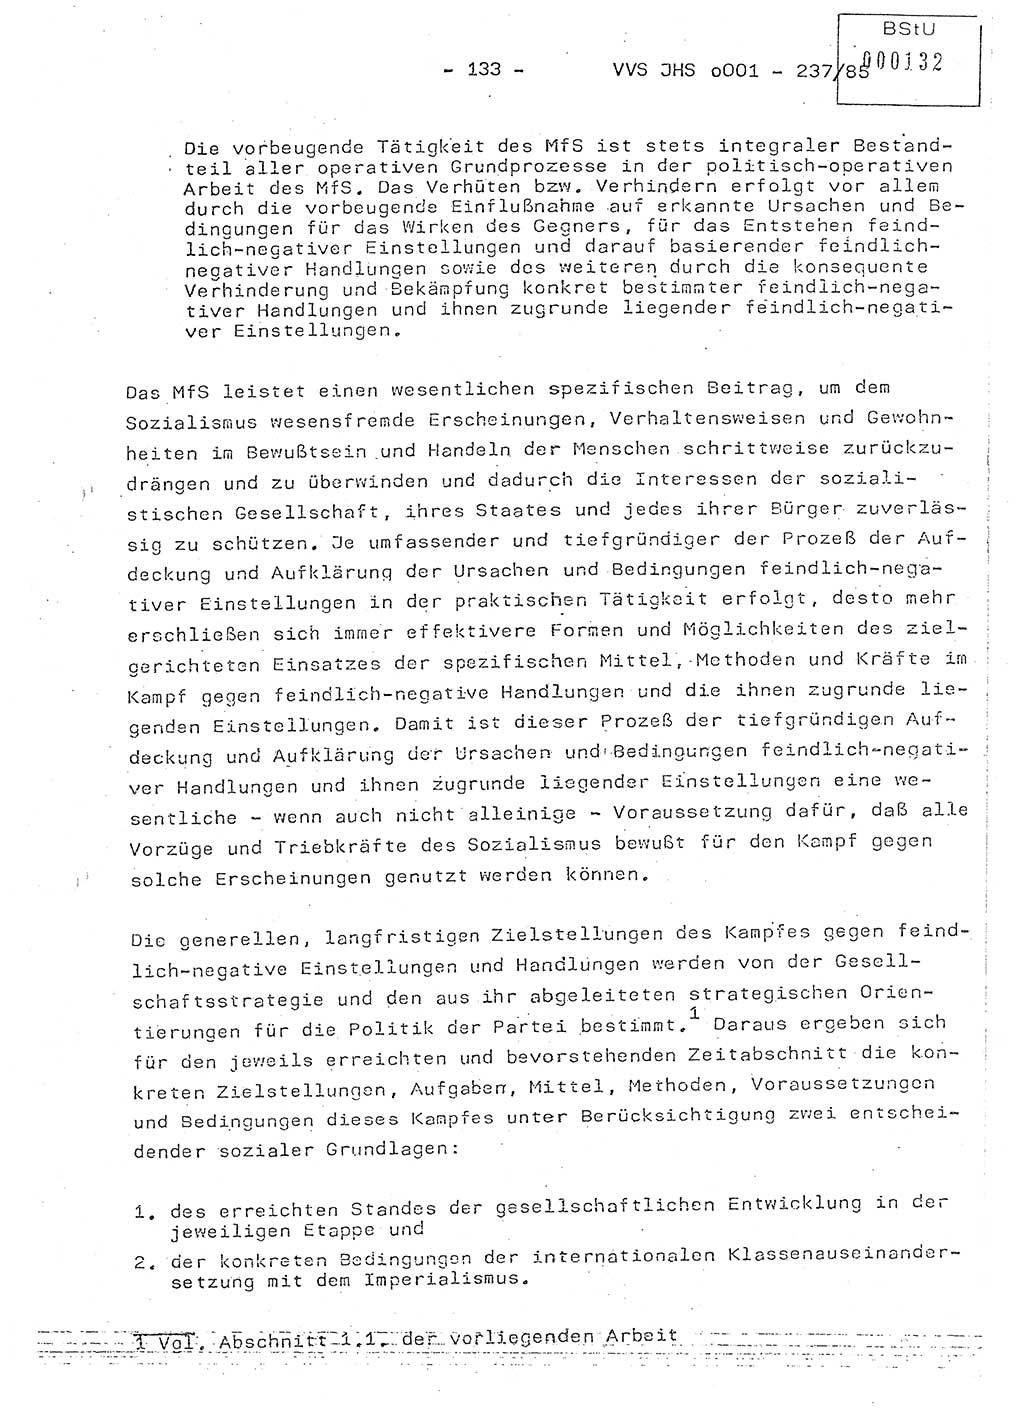 Dissertation Oberstleutnant Peter Jakulski (JHS), Oberstleutnat Christian Rudolph (HA Ⅸ), Major Horst Böttger (ZMD), Major Wolfgang Grüneberg (JHS), Major Albert Meutsch (JHS), Ministerium für Staatssicherheit (MfS) [Deutsche Demokratische Republik (DDR)], Juristische Hochschule (JHS), Vertrauliche Verschlußsache (VVS) o001-237/85, Potsdam 1985, Seite 133 (Diss. MfS DDR JHS VVS o001-237/85 1985, S. 133)